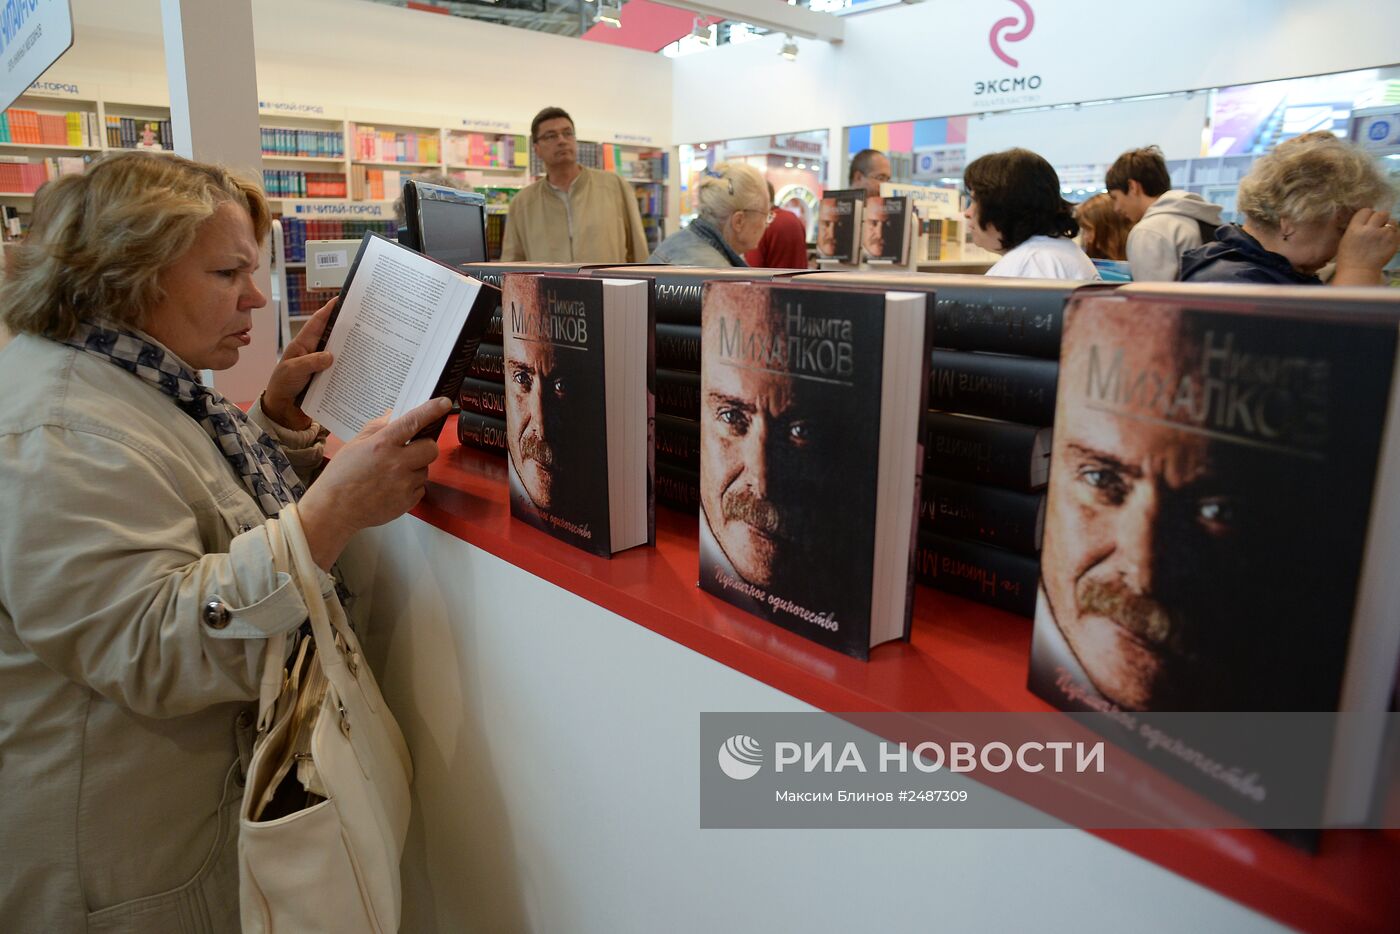 27-я Московская международная книжная выставка-ярмарка